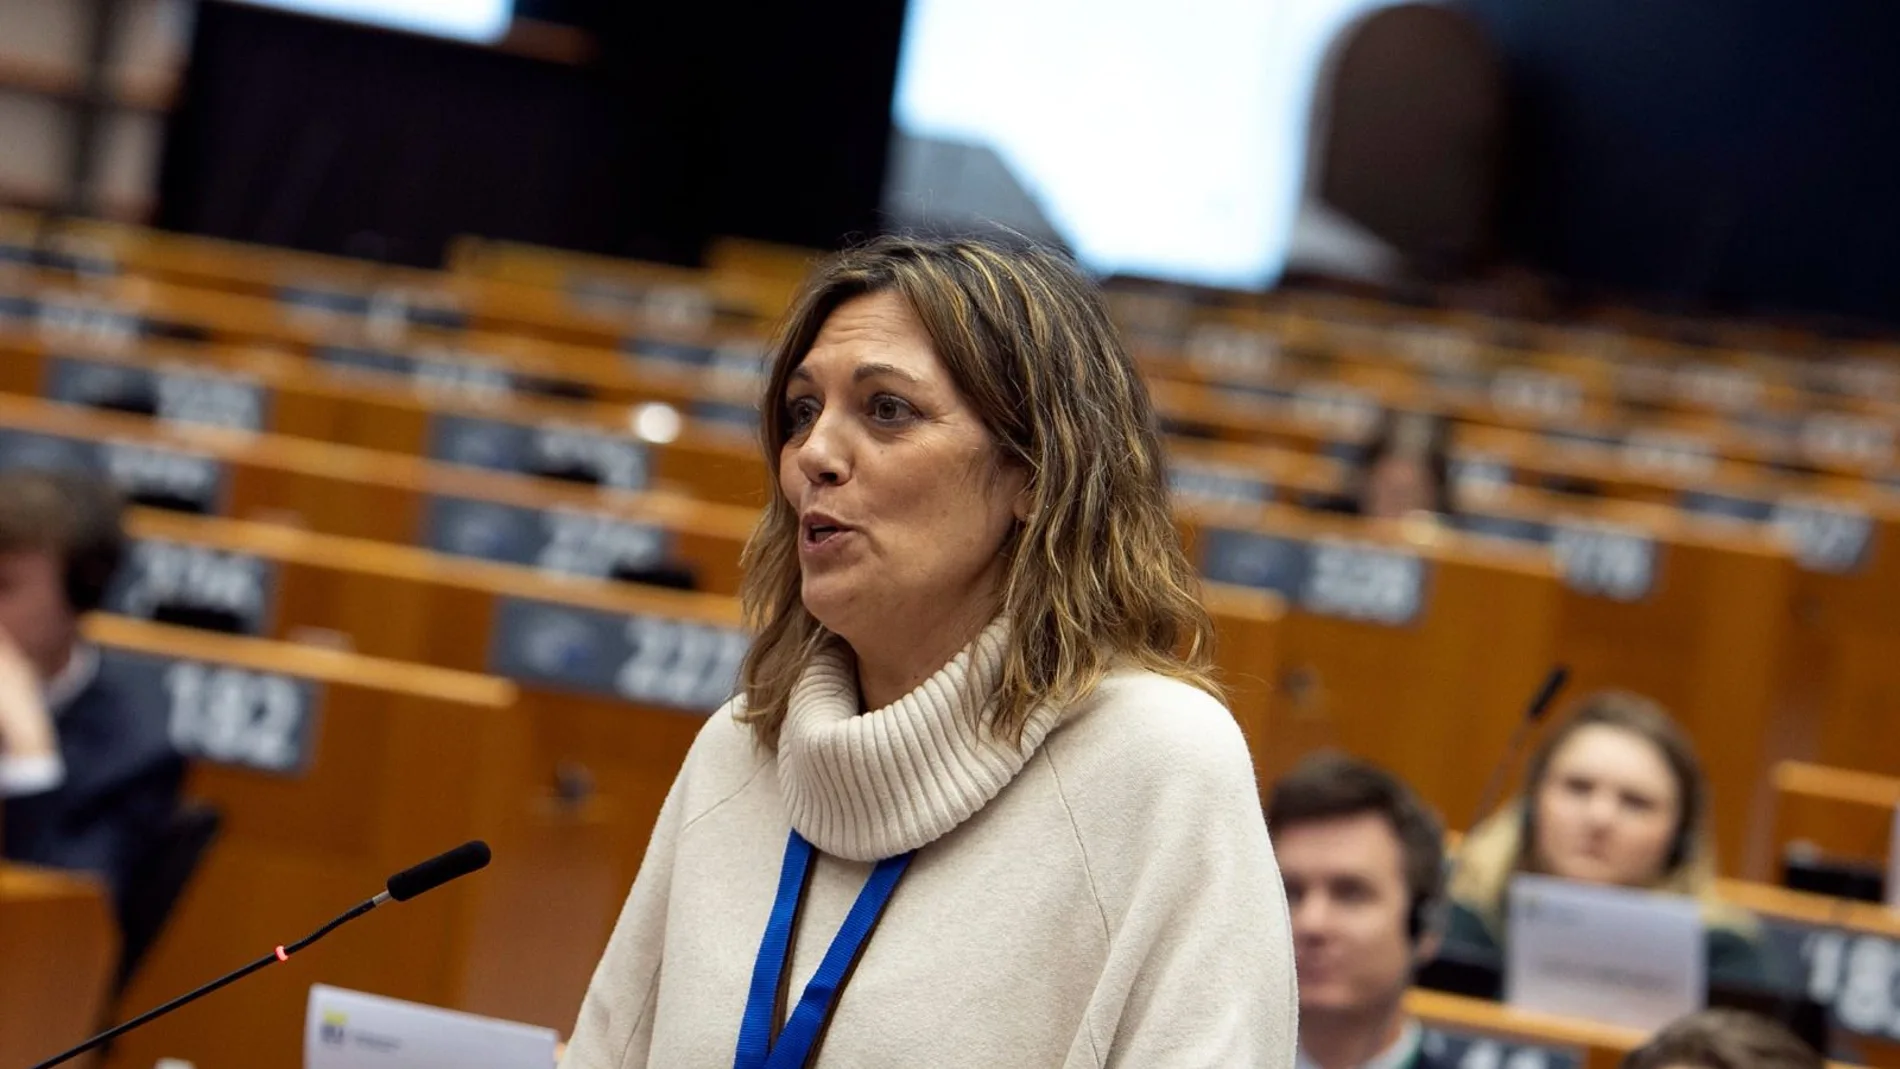 La diputada del PP Milagros Marcos durante su intervención en la COSAC, en el Parlamento Europeo